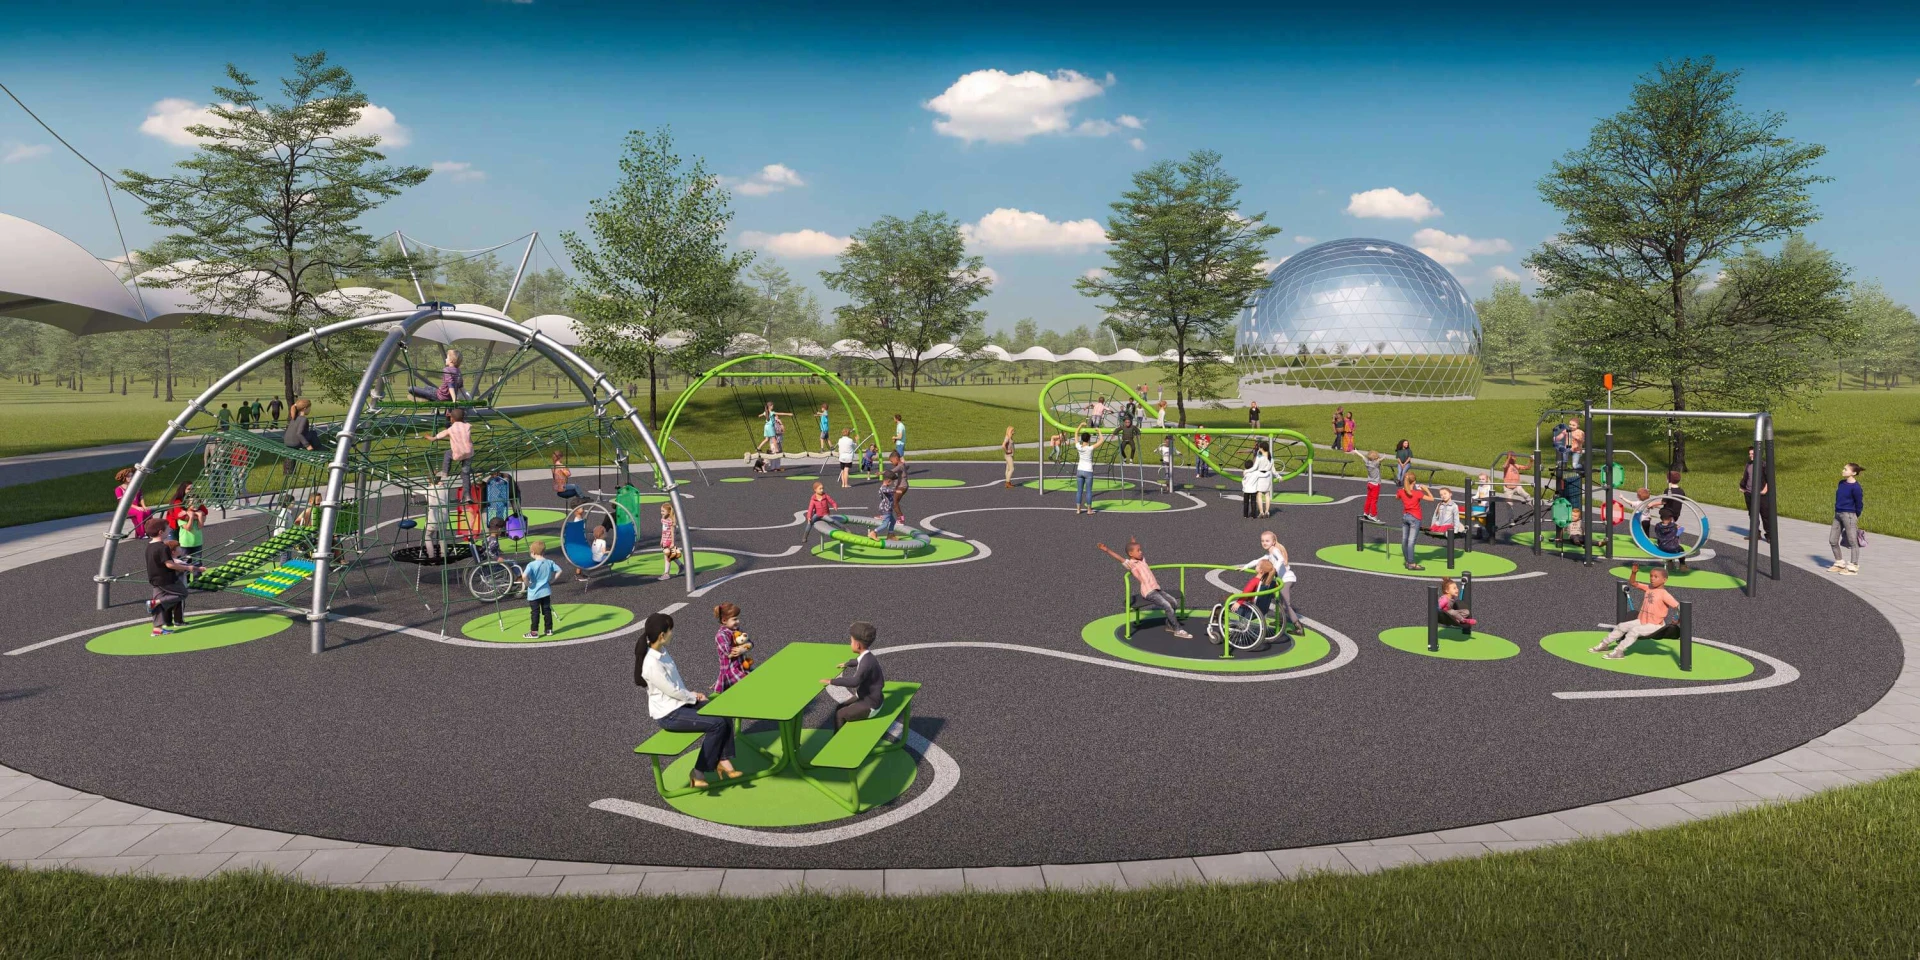 Et unikt Urban Arch legepladsdesign, der tiltrækker børn og deres forældre